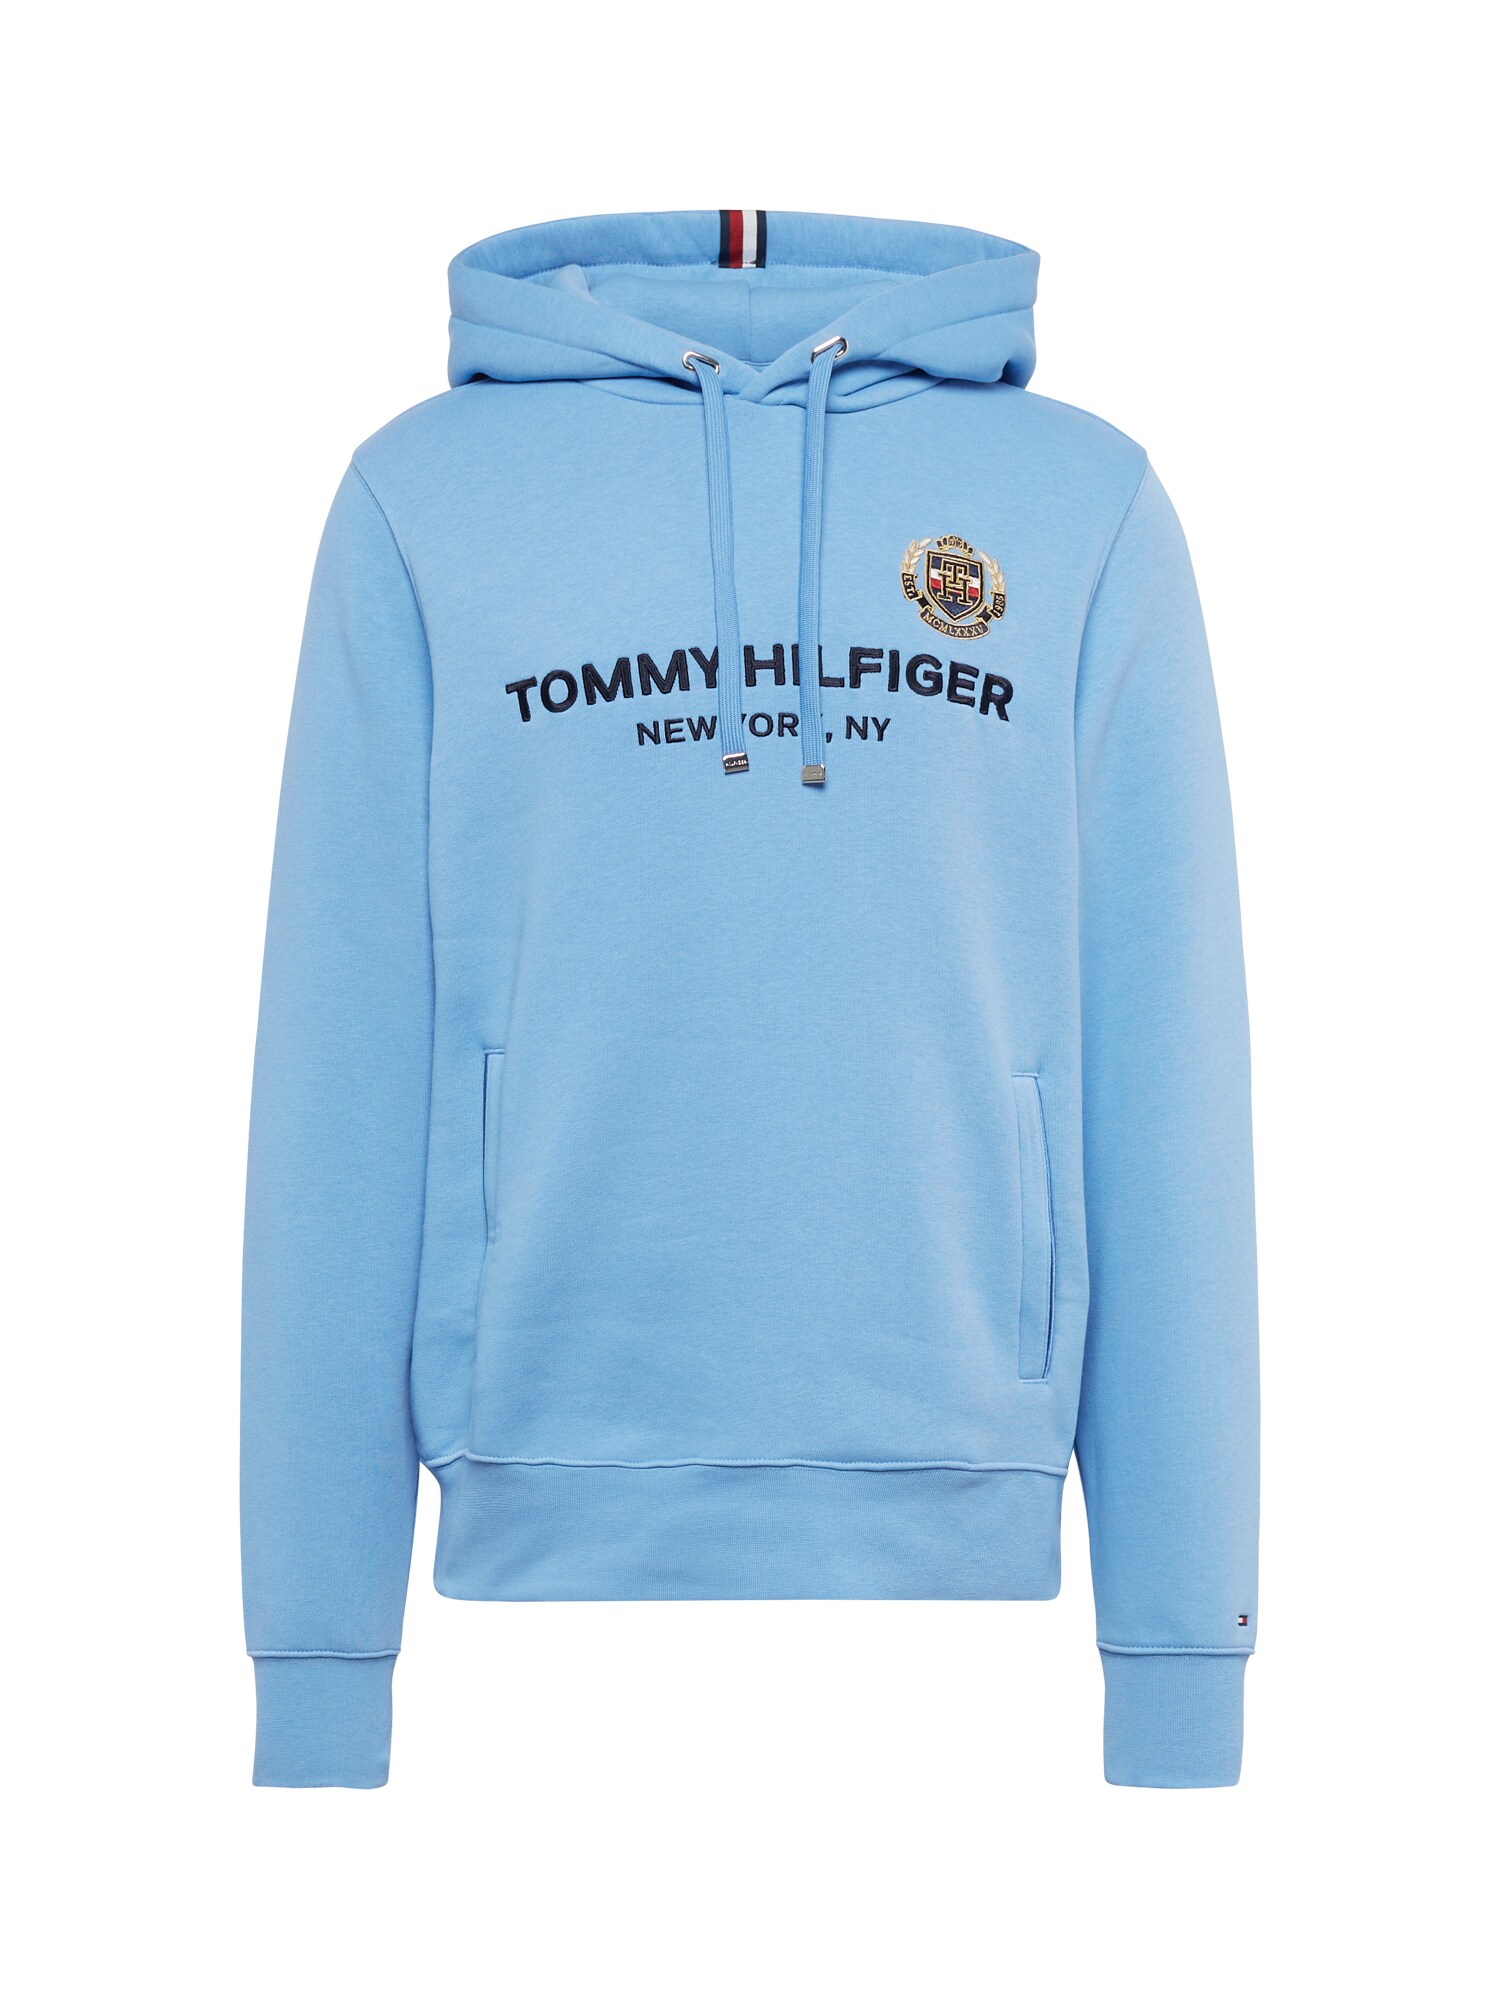 Tommy Hilfiger TOMMY HILFIGER Sweatshirt beige / hellblau / schwarz / weiß